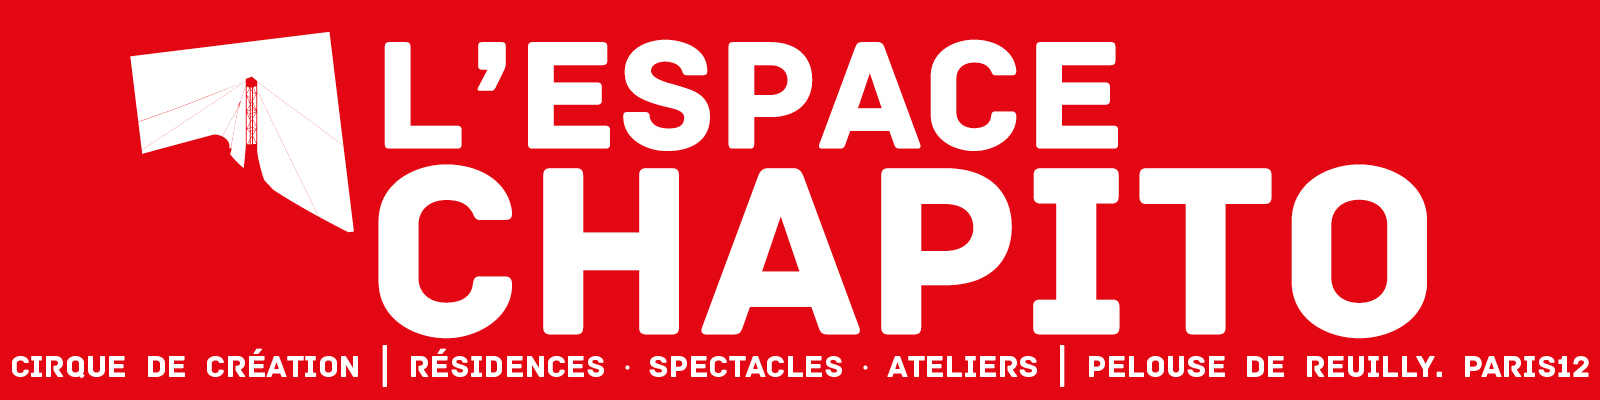 EspaceChapitO-banniere-02-1600x400-m022